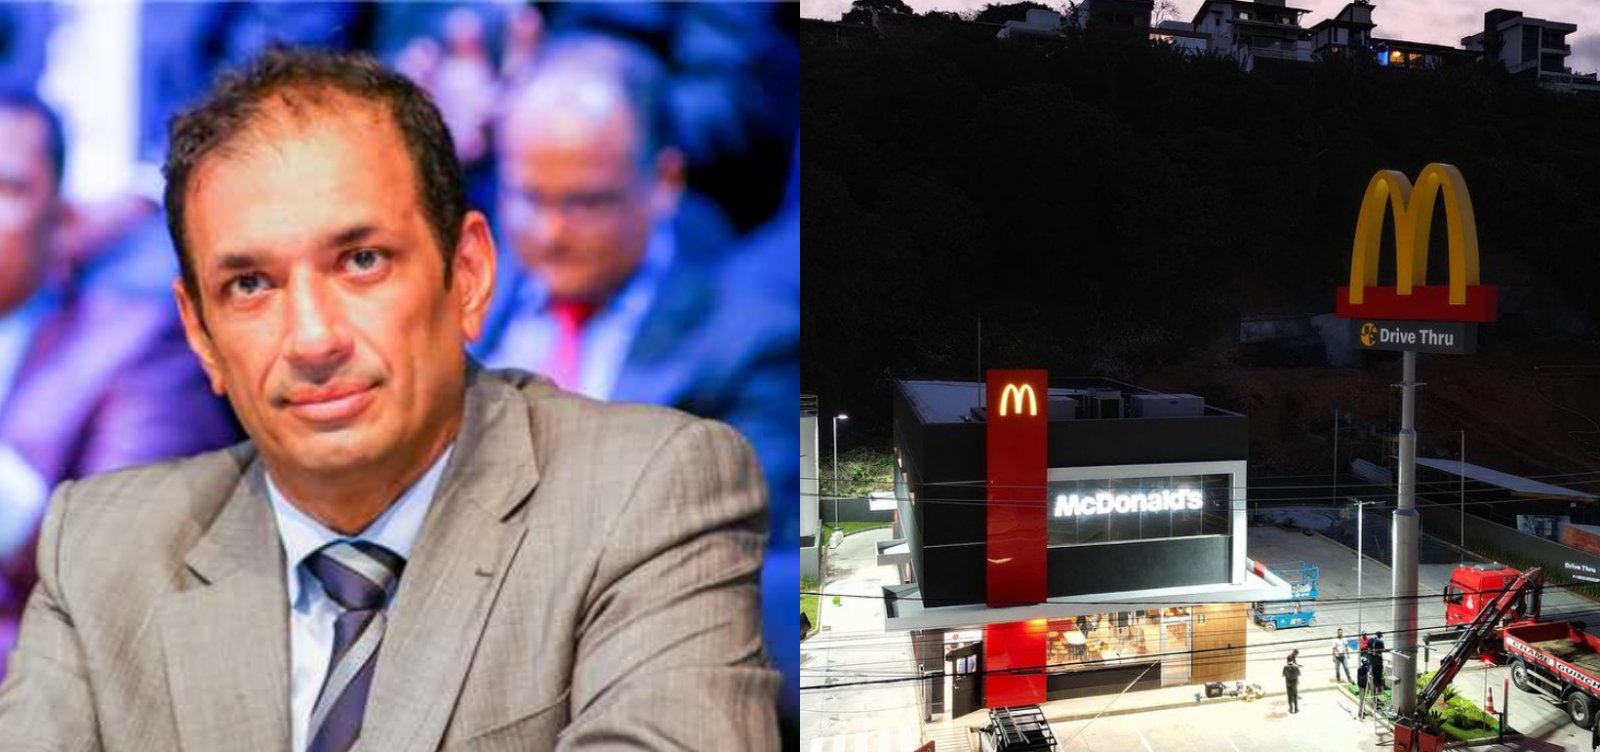 Criticado por favorecer McDonald's, prefeito de Ihéus foi alvo do MPF por beneficiar “grupo do fast-food”